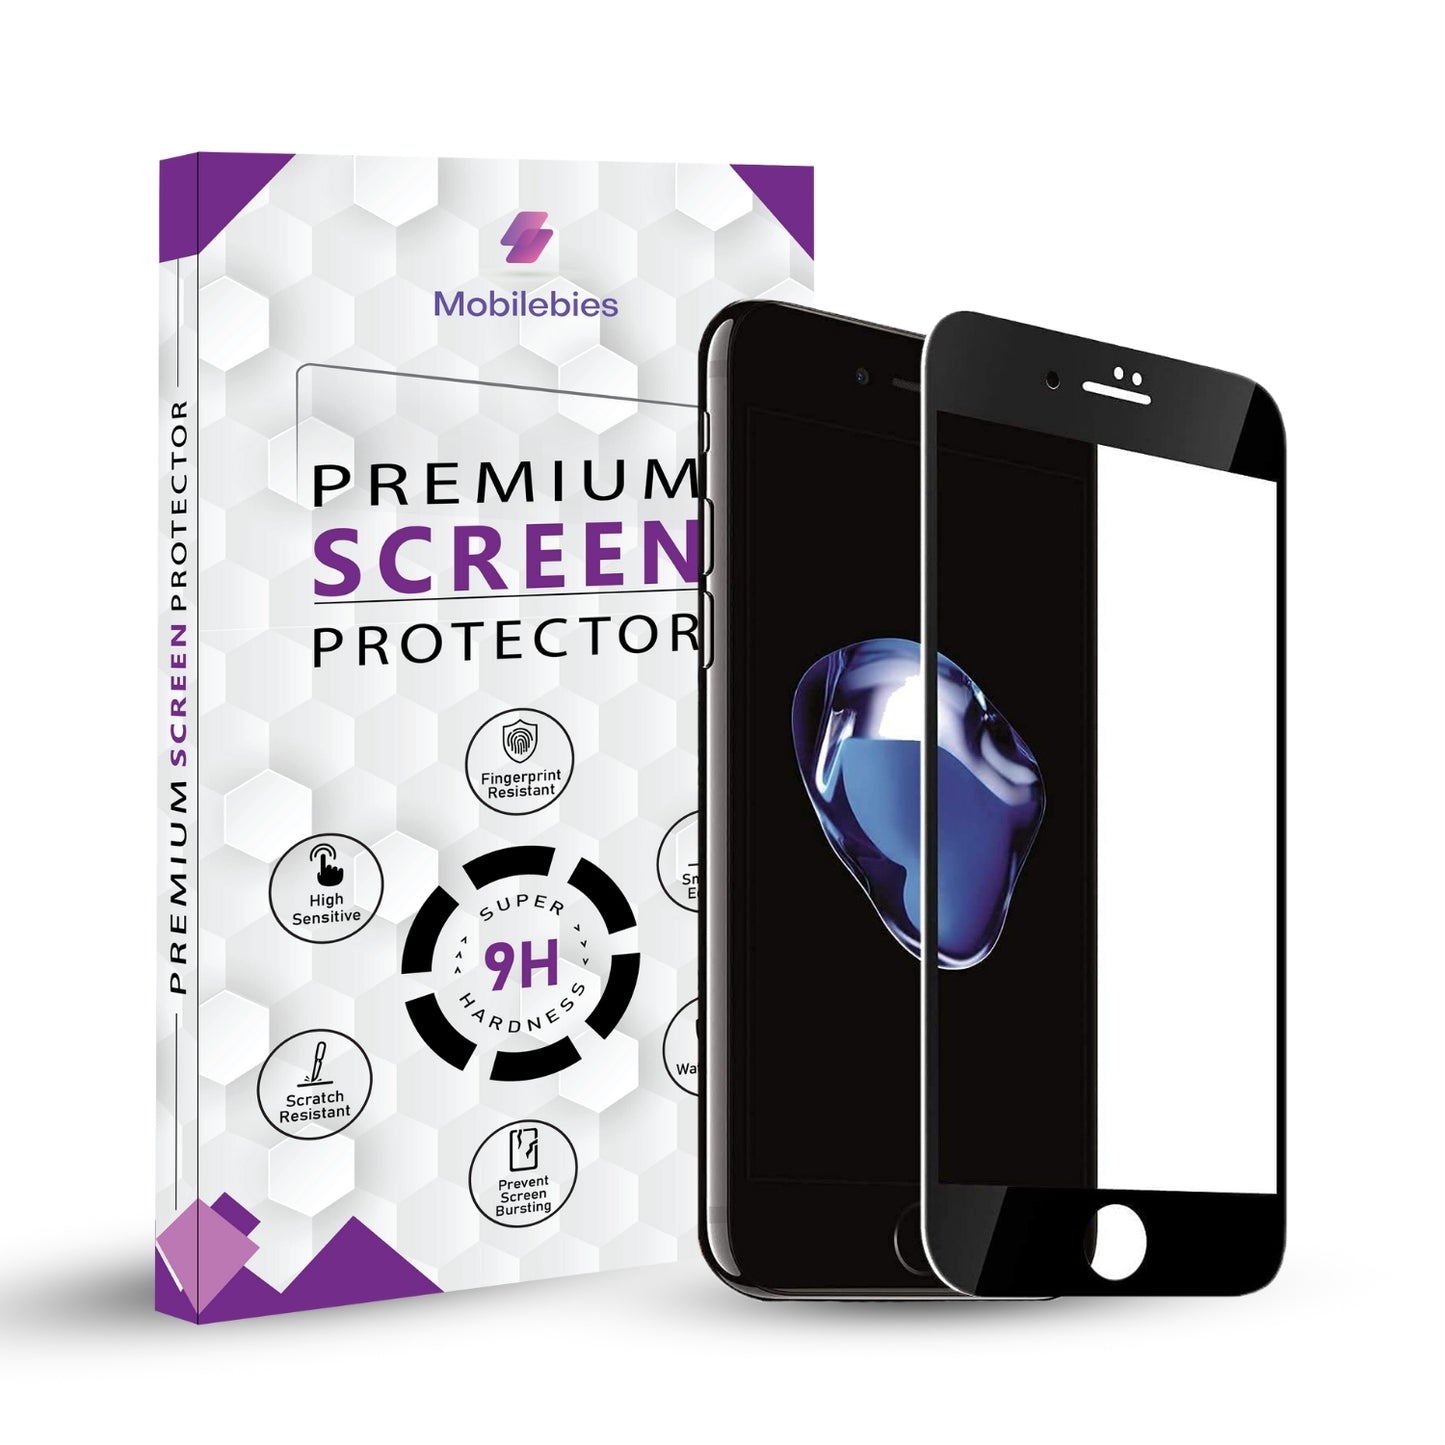 iPhone 8 series Premium Screen Protector